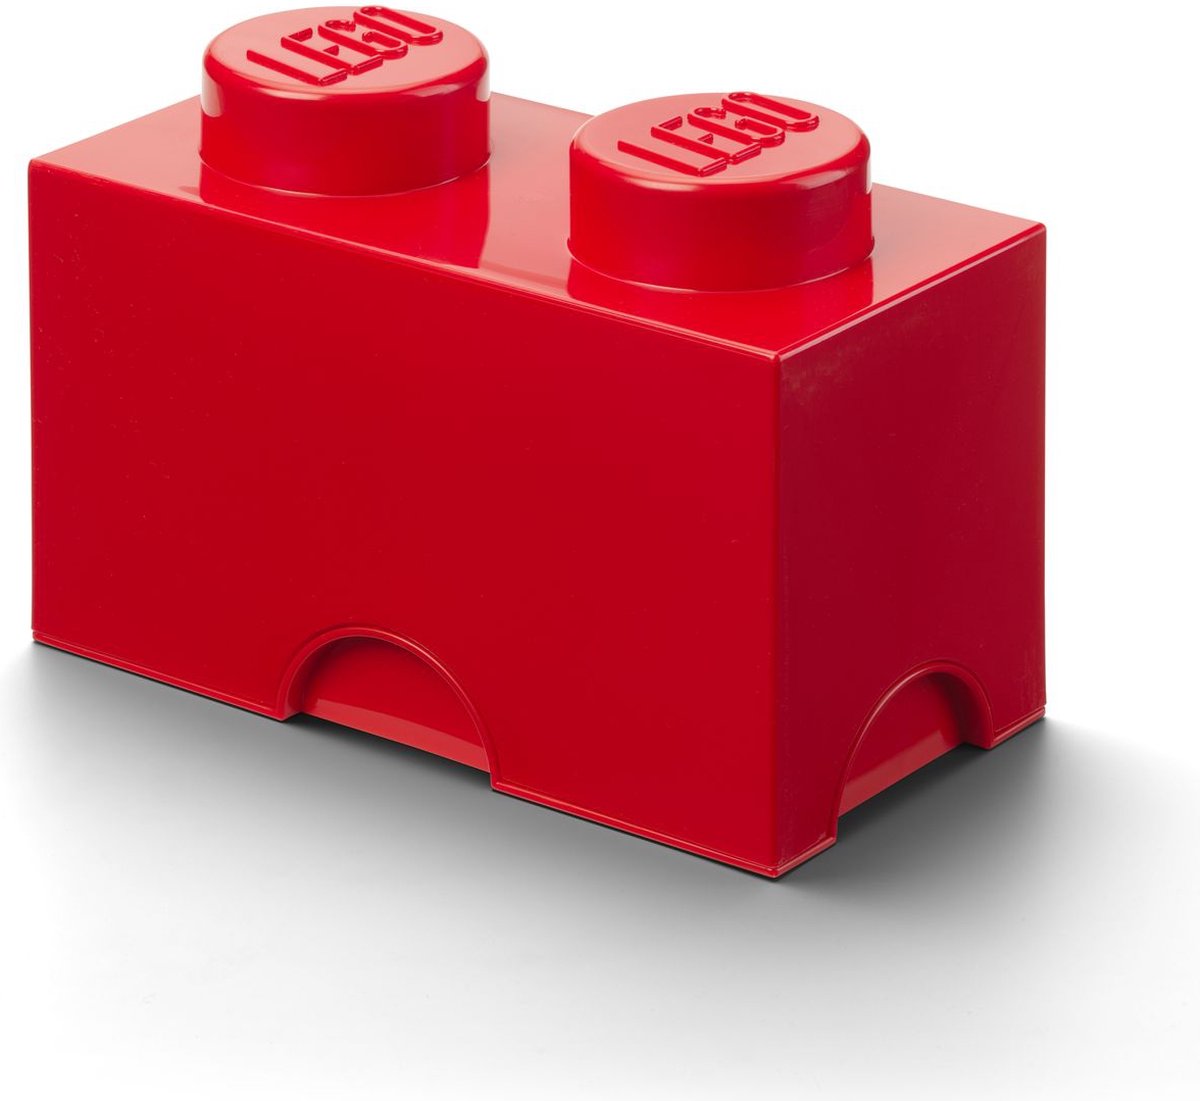 2€01 sur LEGO boîte de rangement tête de garçon petit 16 x 18,5 cm